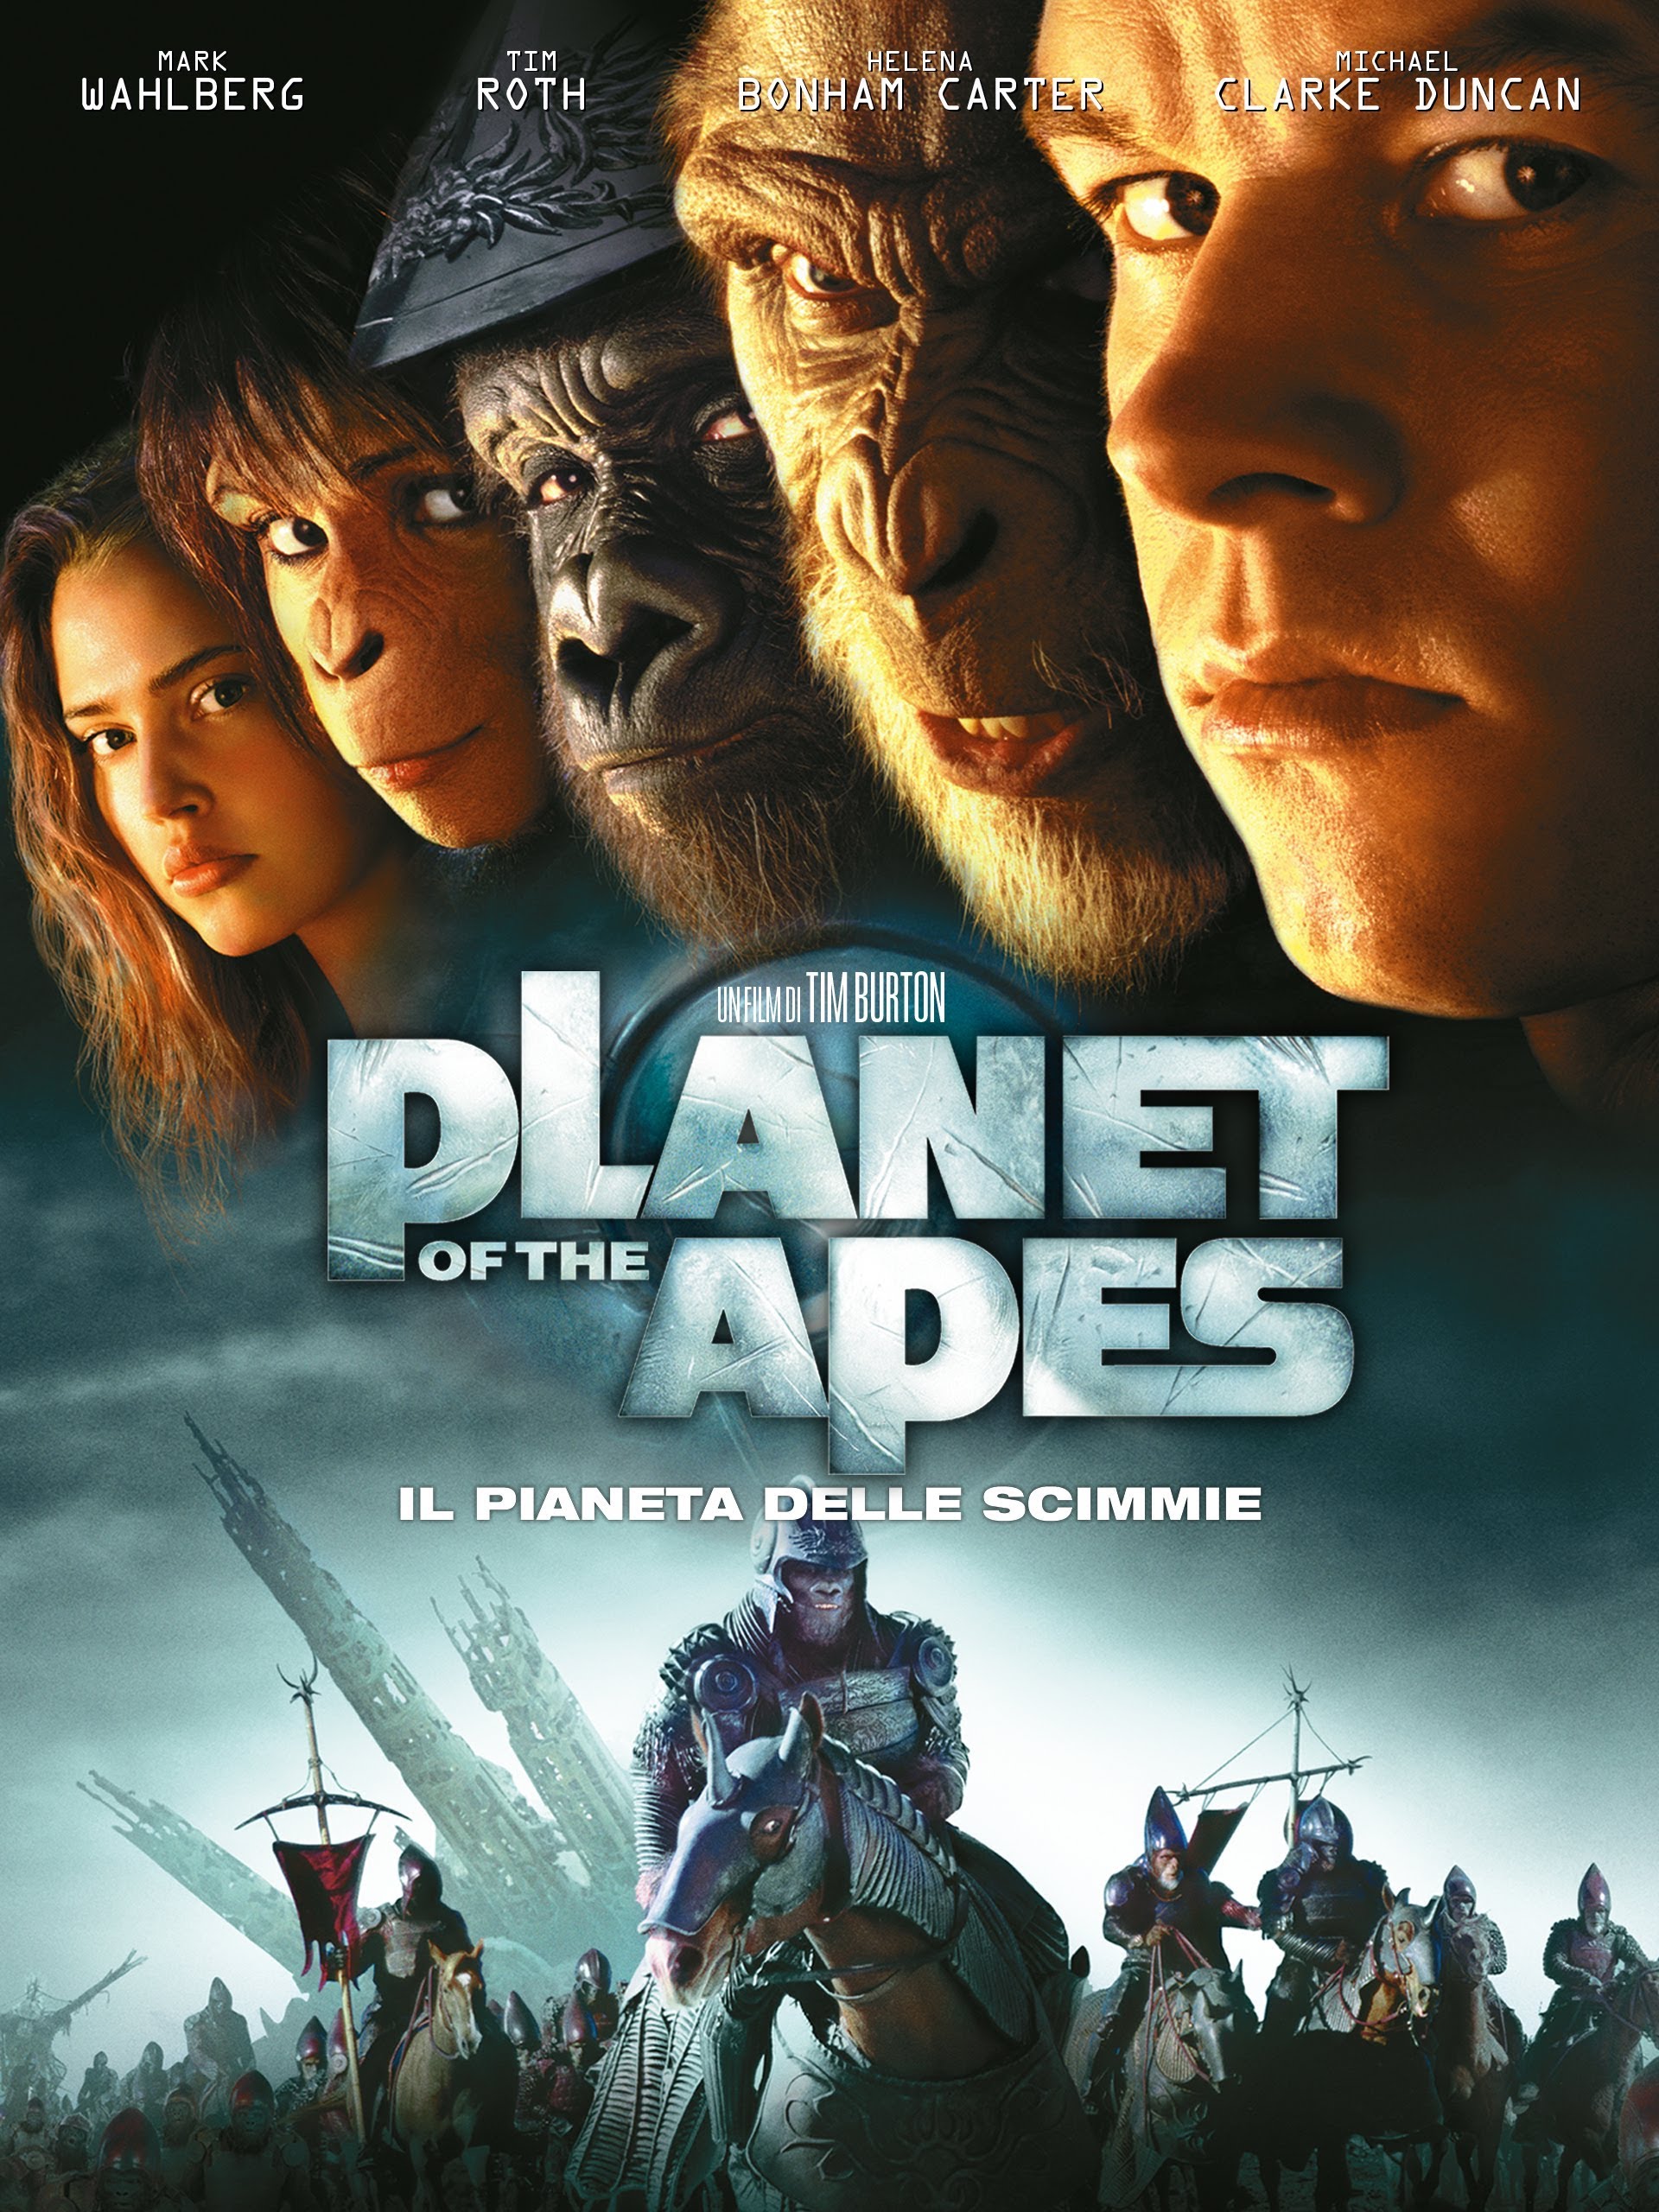 Planet of the Apes – Il pianeta delle scimmie [HD] (2001)